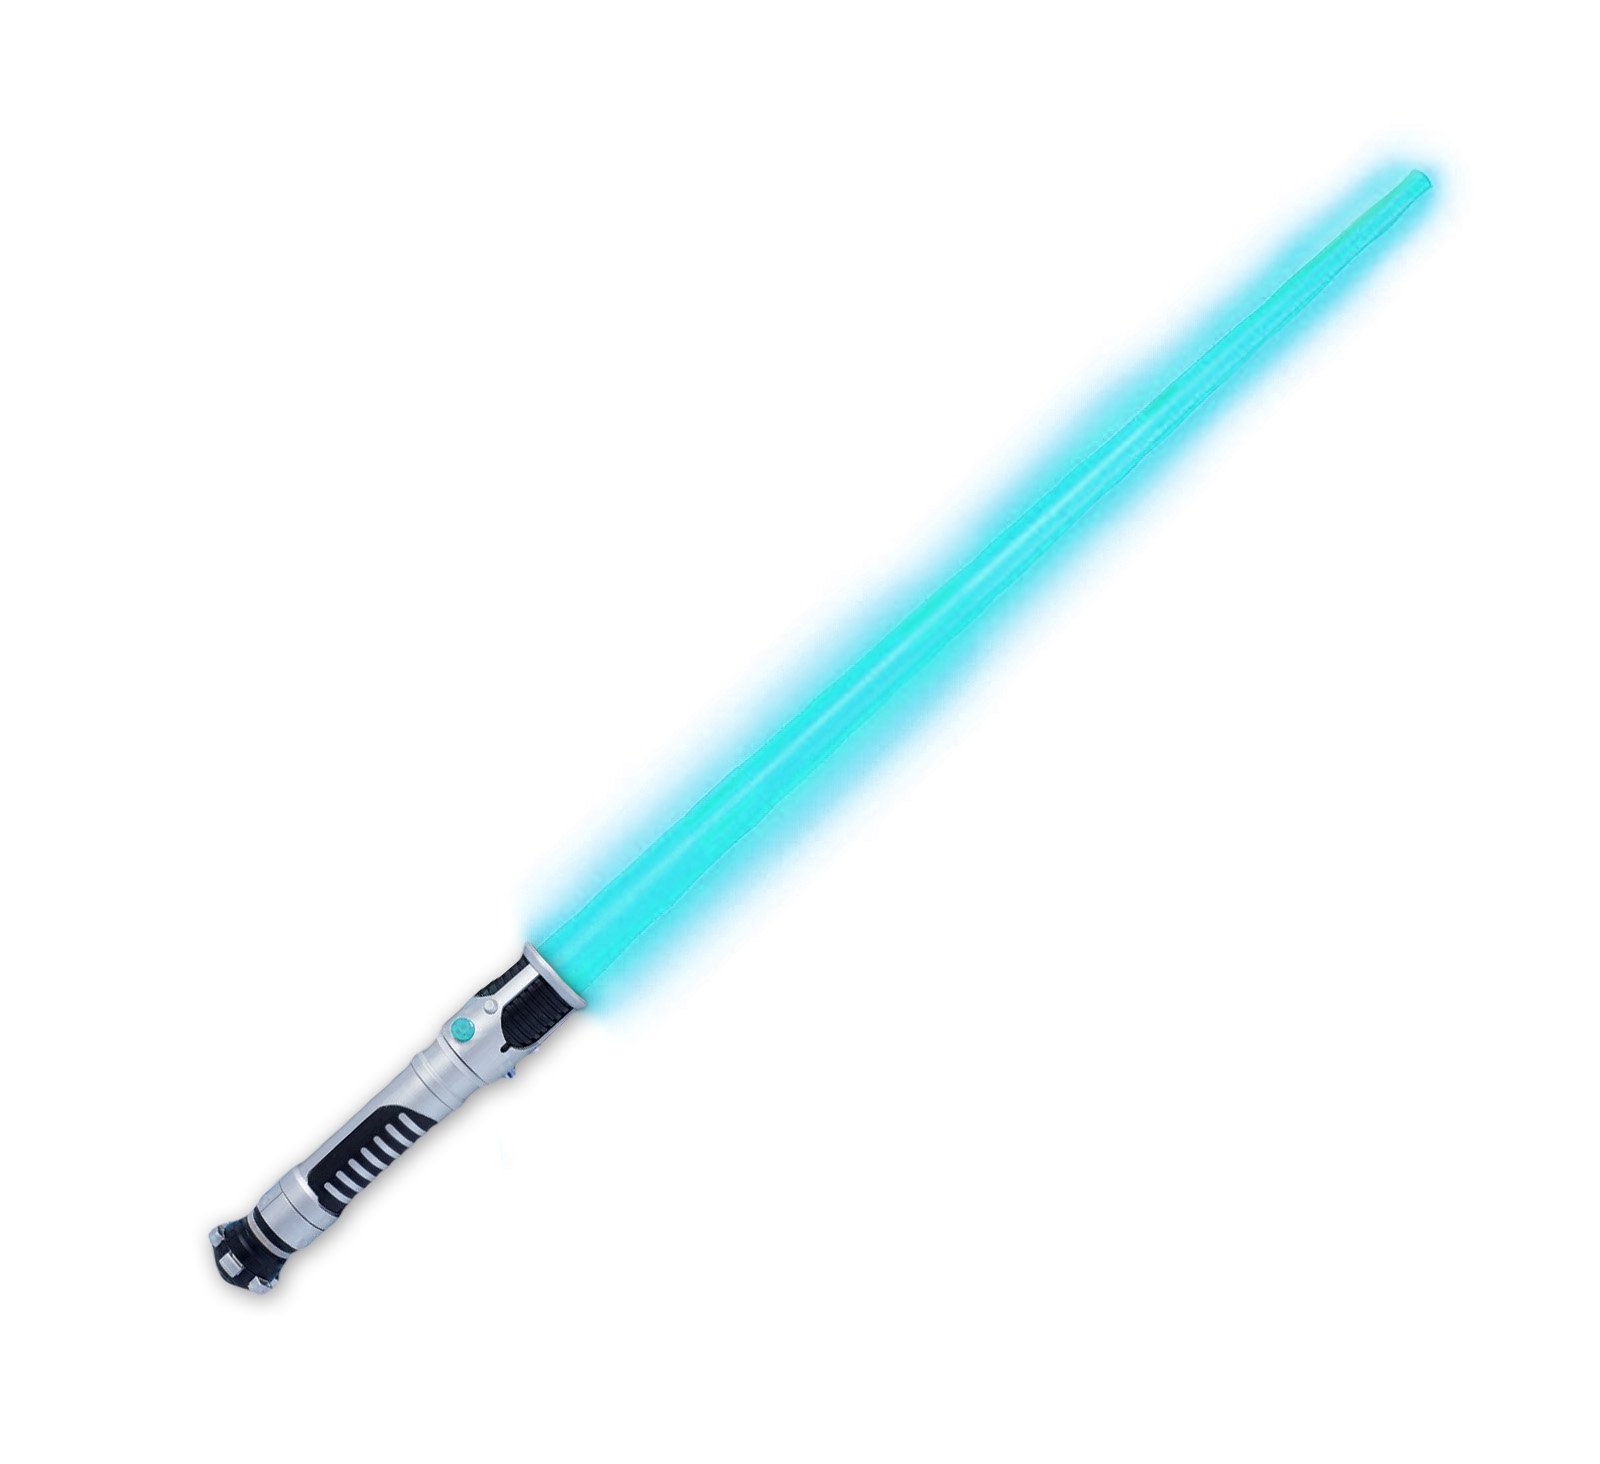 Star Wars Obi-Wan Kenobi Blue Lightsaber